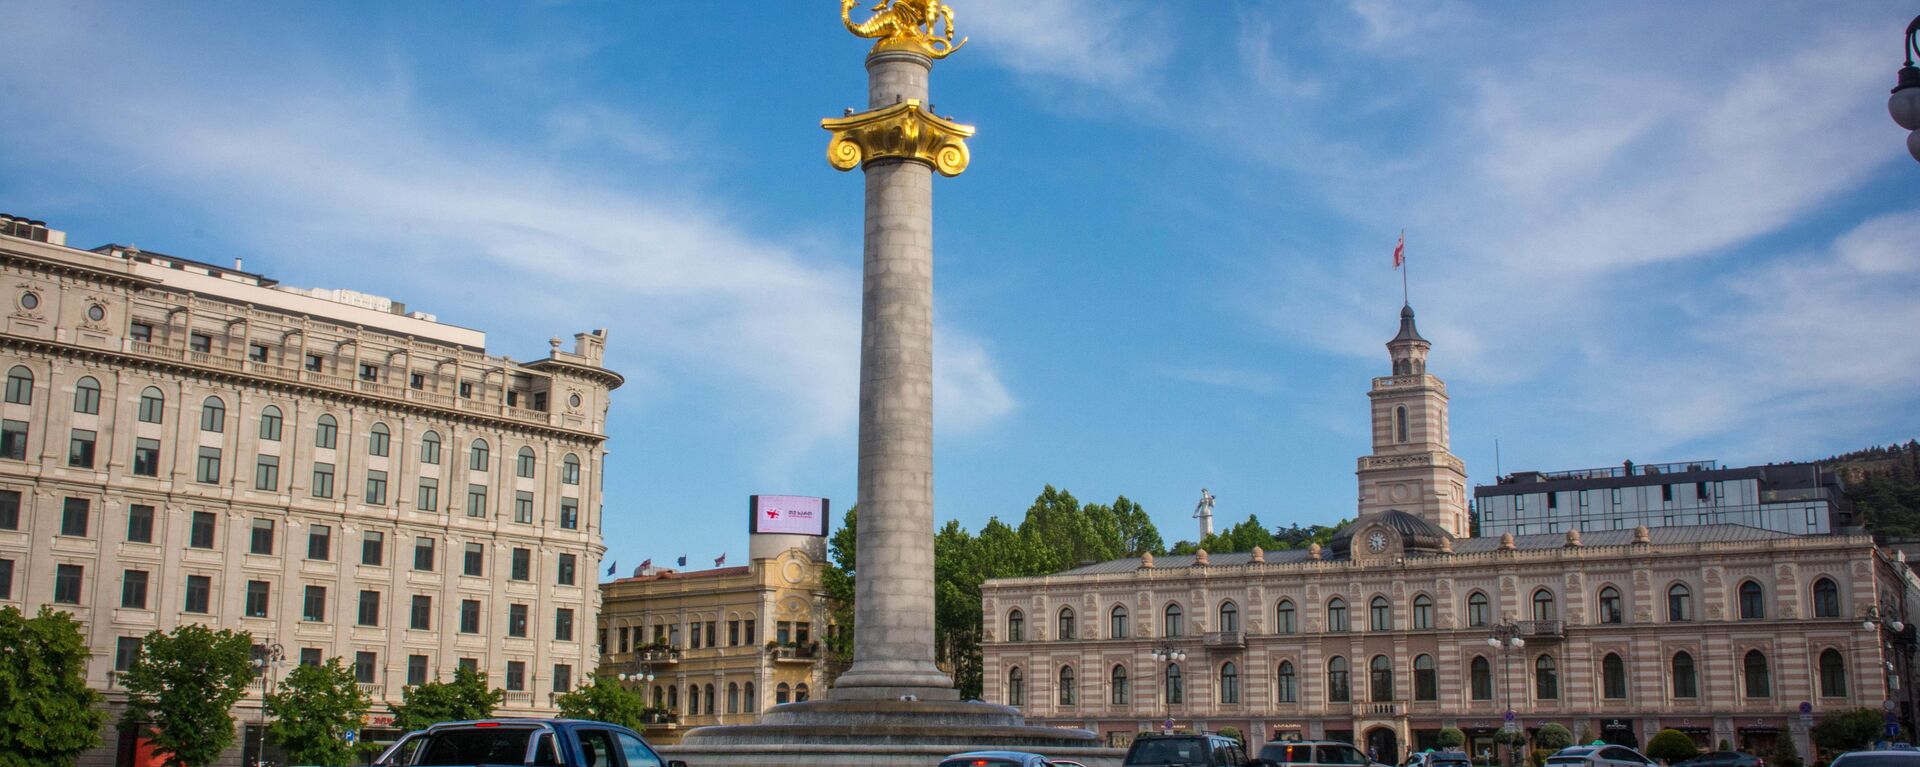 Весна в столице Грузии. Площадь Свободы в Тбилиси, вид на памятник Святому Георгию - Sputnik Грузия, 1920, 19.09.2021